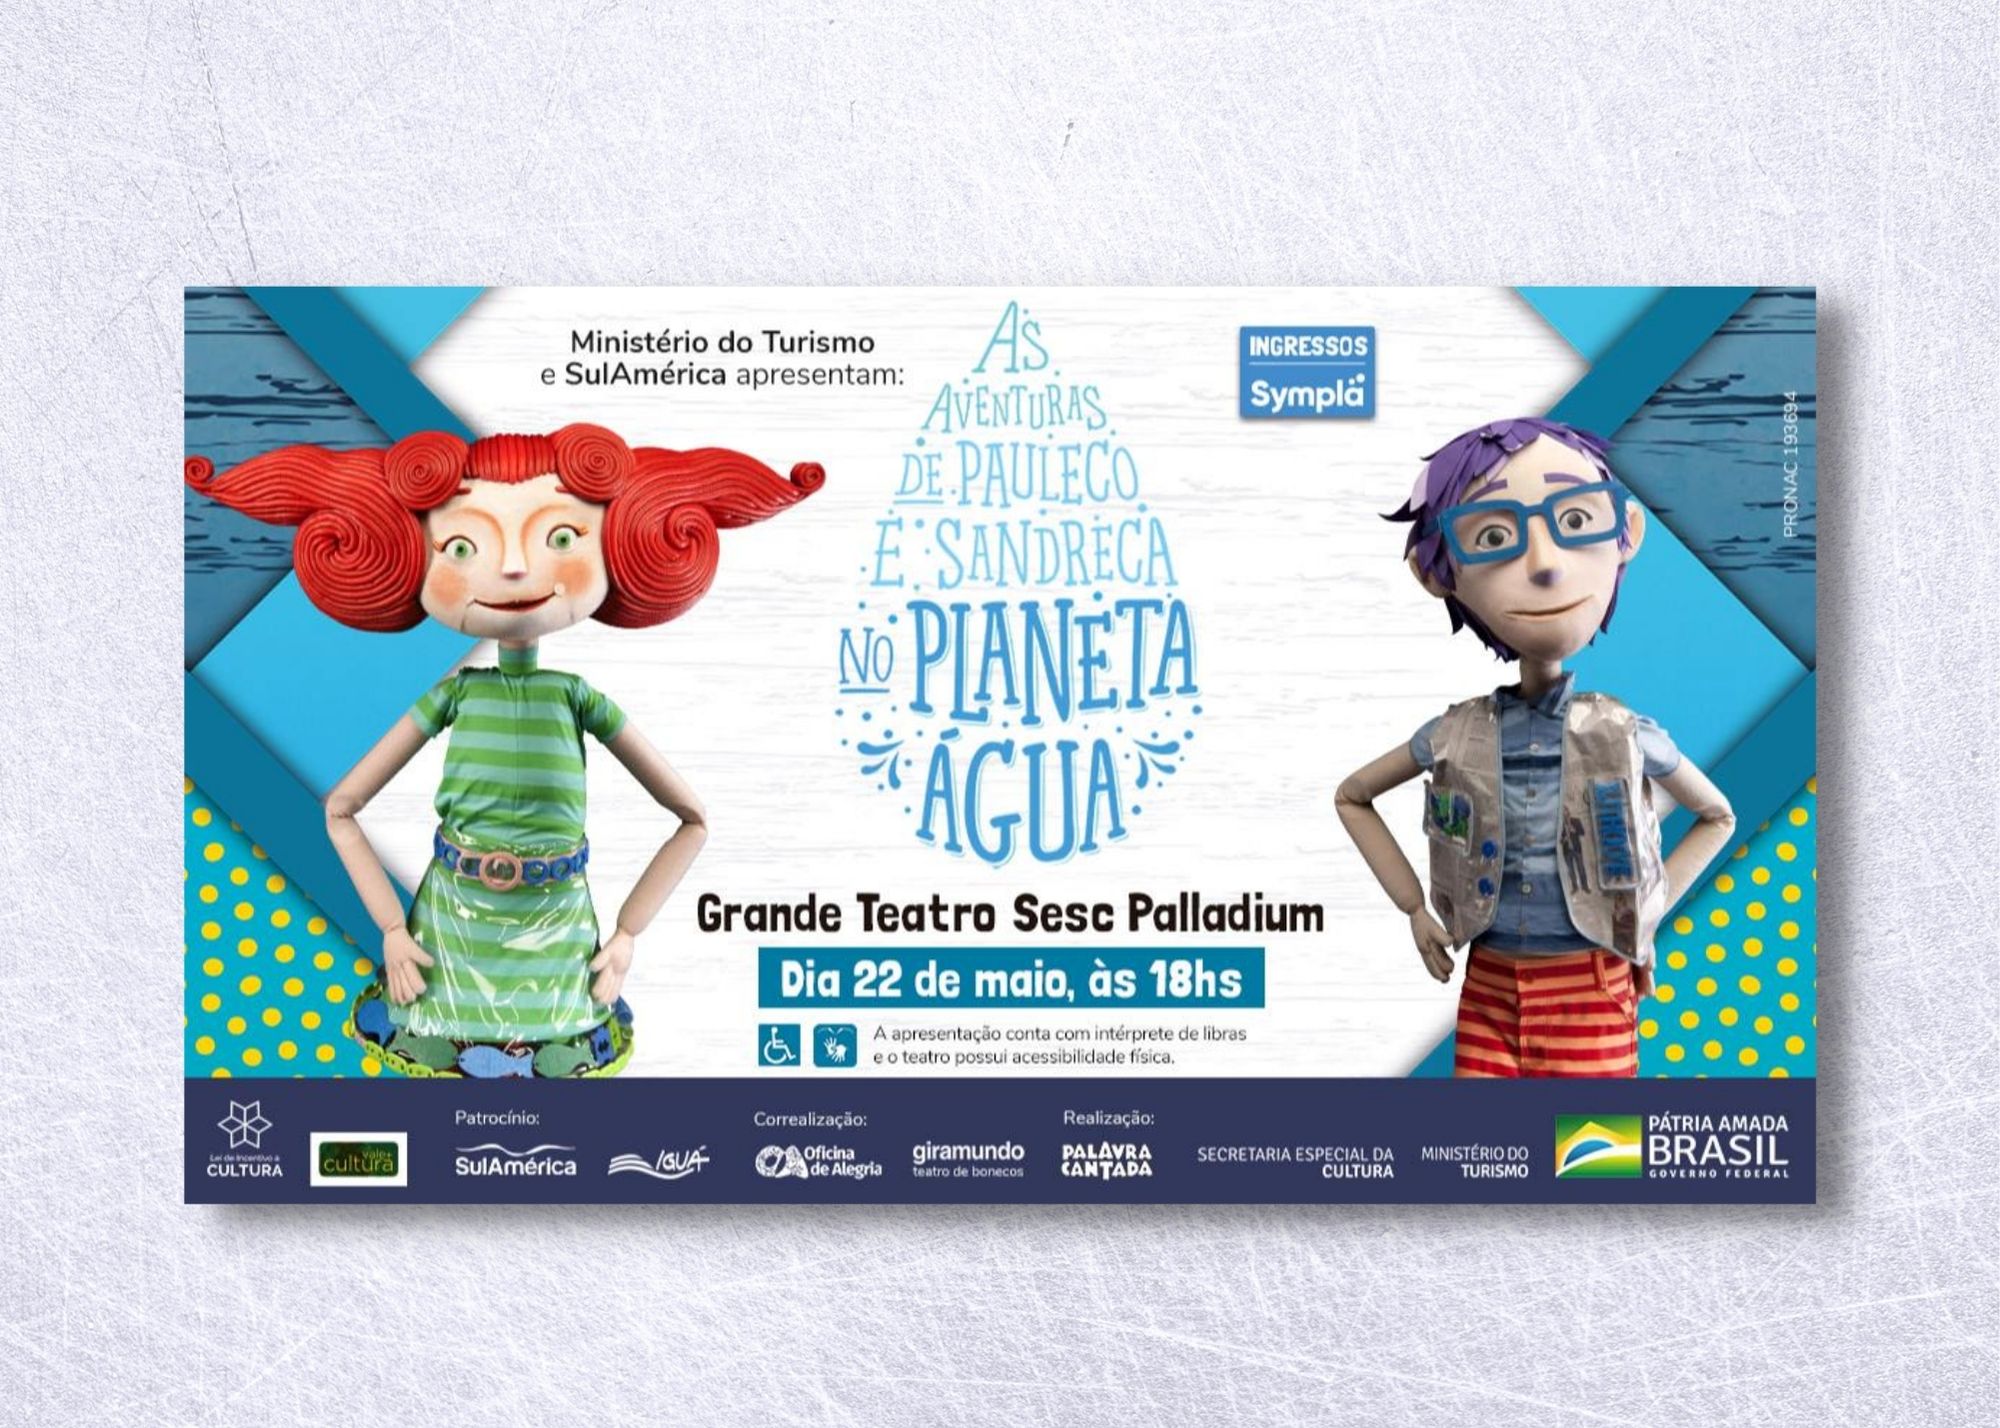 Personagens inspirados na dupla Palavra Cantada reestreiam em Belo Horizonte no musical “As Aventuras de Pauleco e Sandreca no Planeta Água”